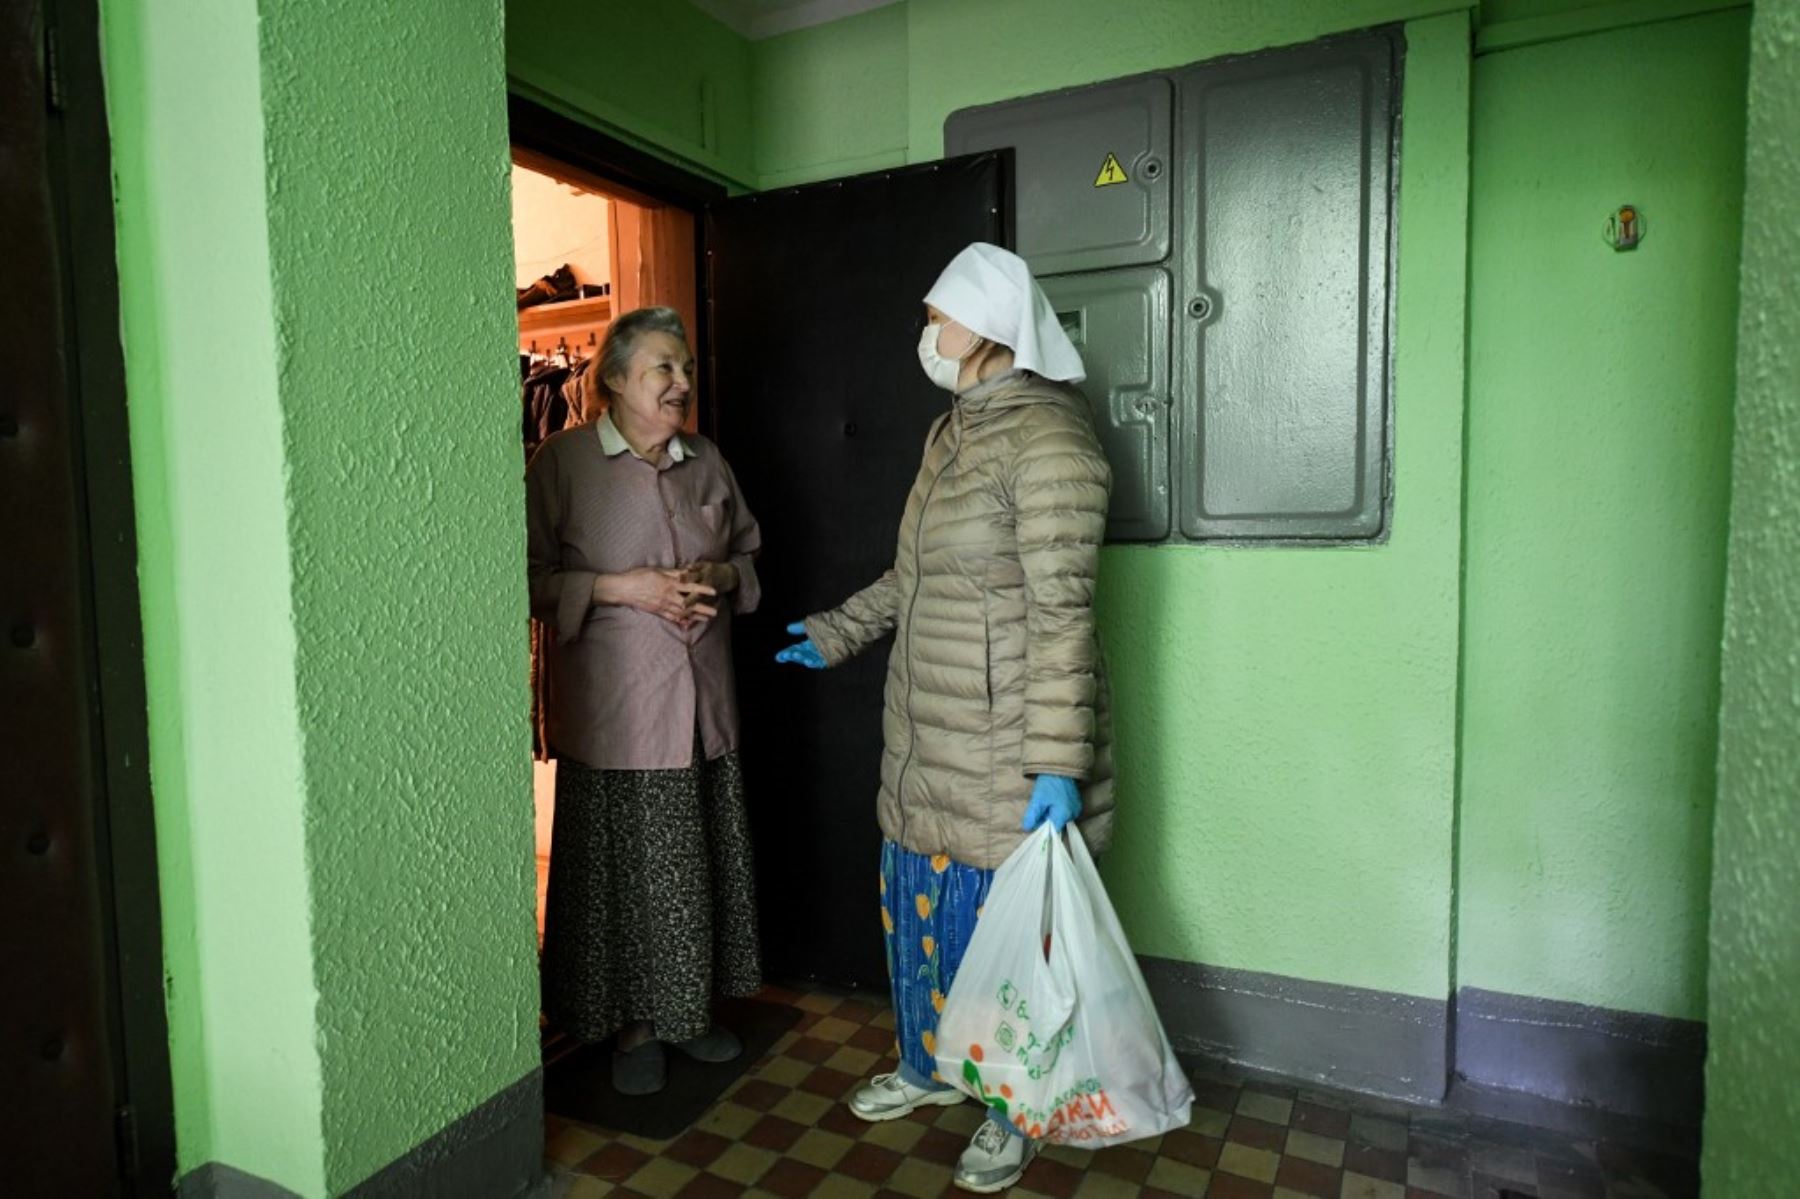 La enfermera Ivanna Banshchikova visita a una mujer en su casa en Moscú en medio del brote de COVID-19 causado por el nuevo coronavirus. Foto: AFP